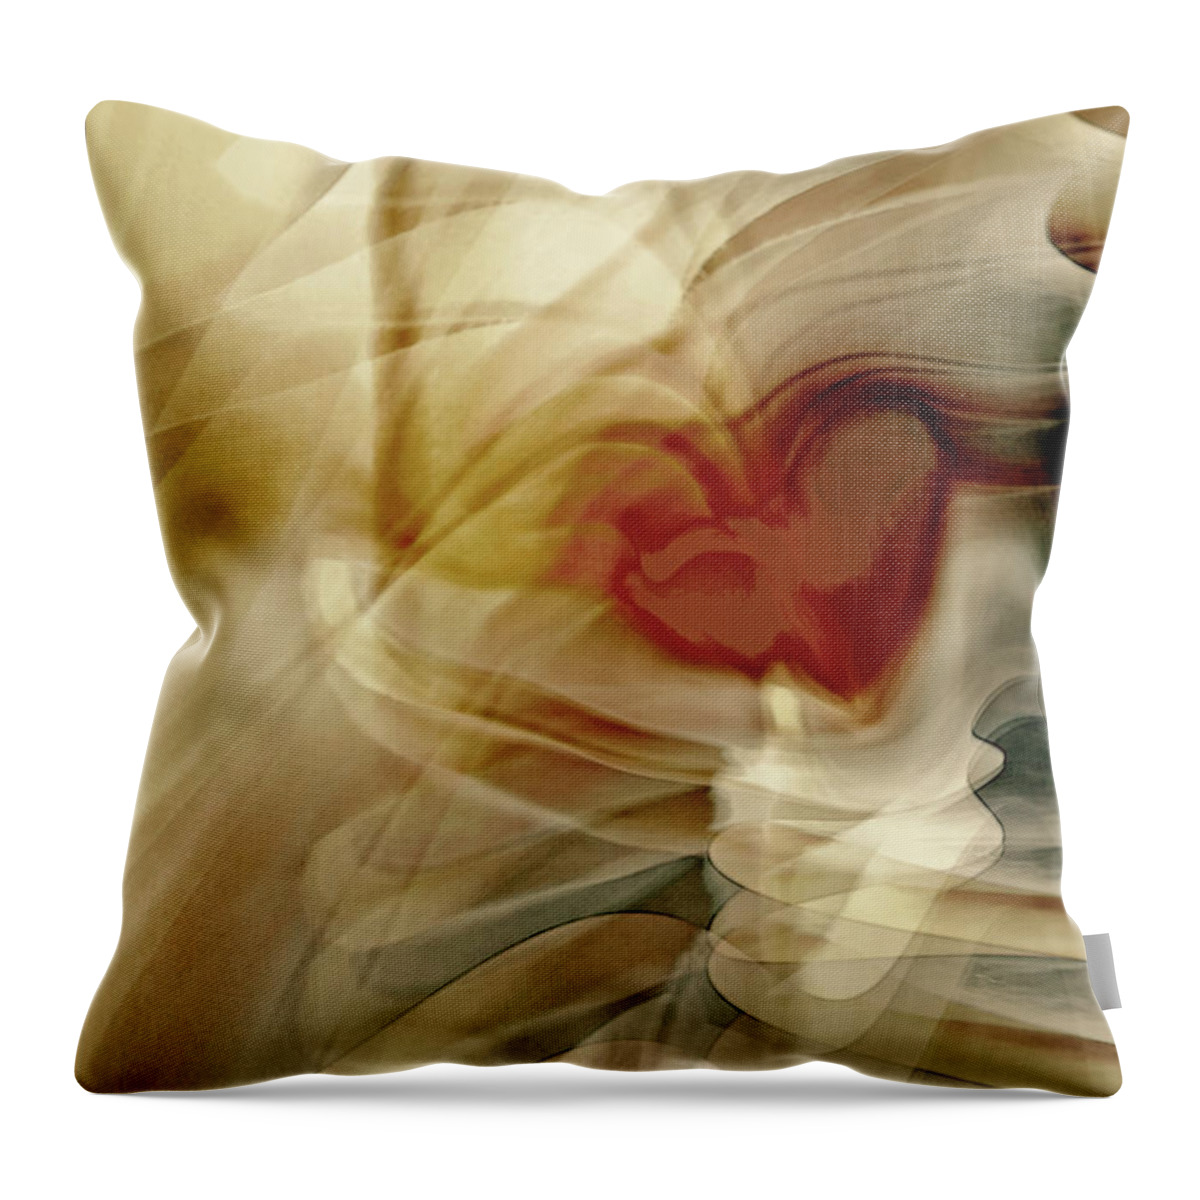 Love Art Throw Pillow featuring the digital art Love by Linda Sannuti